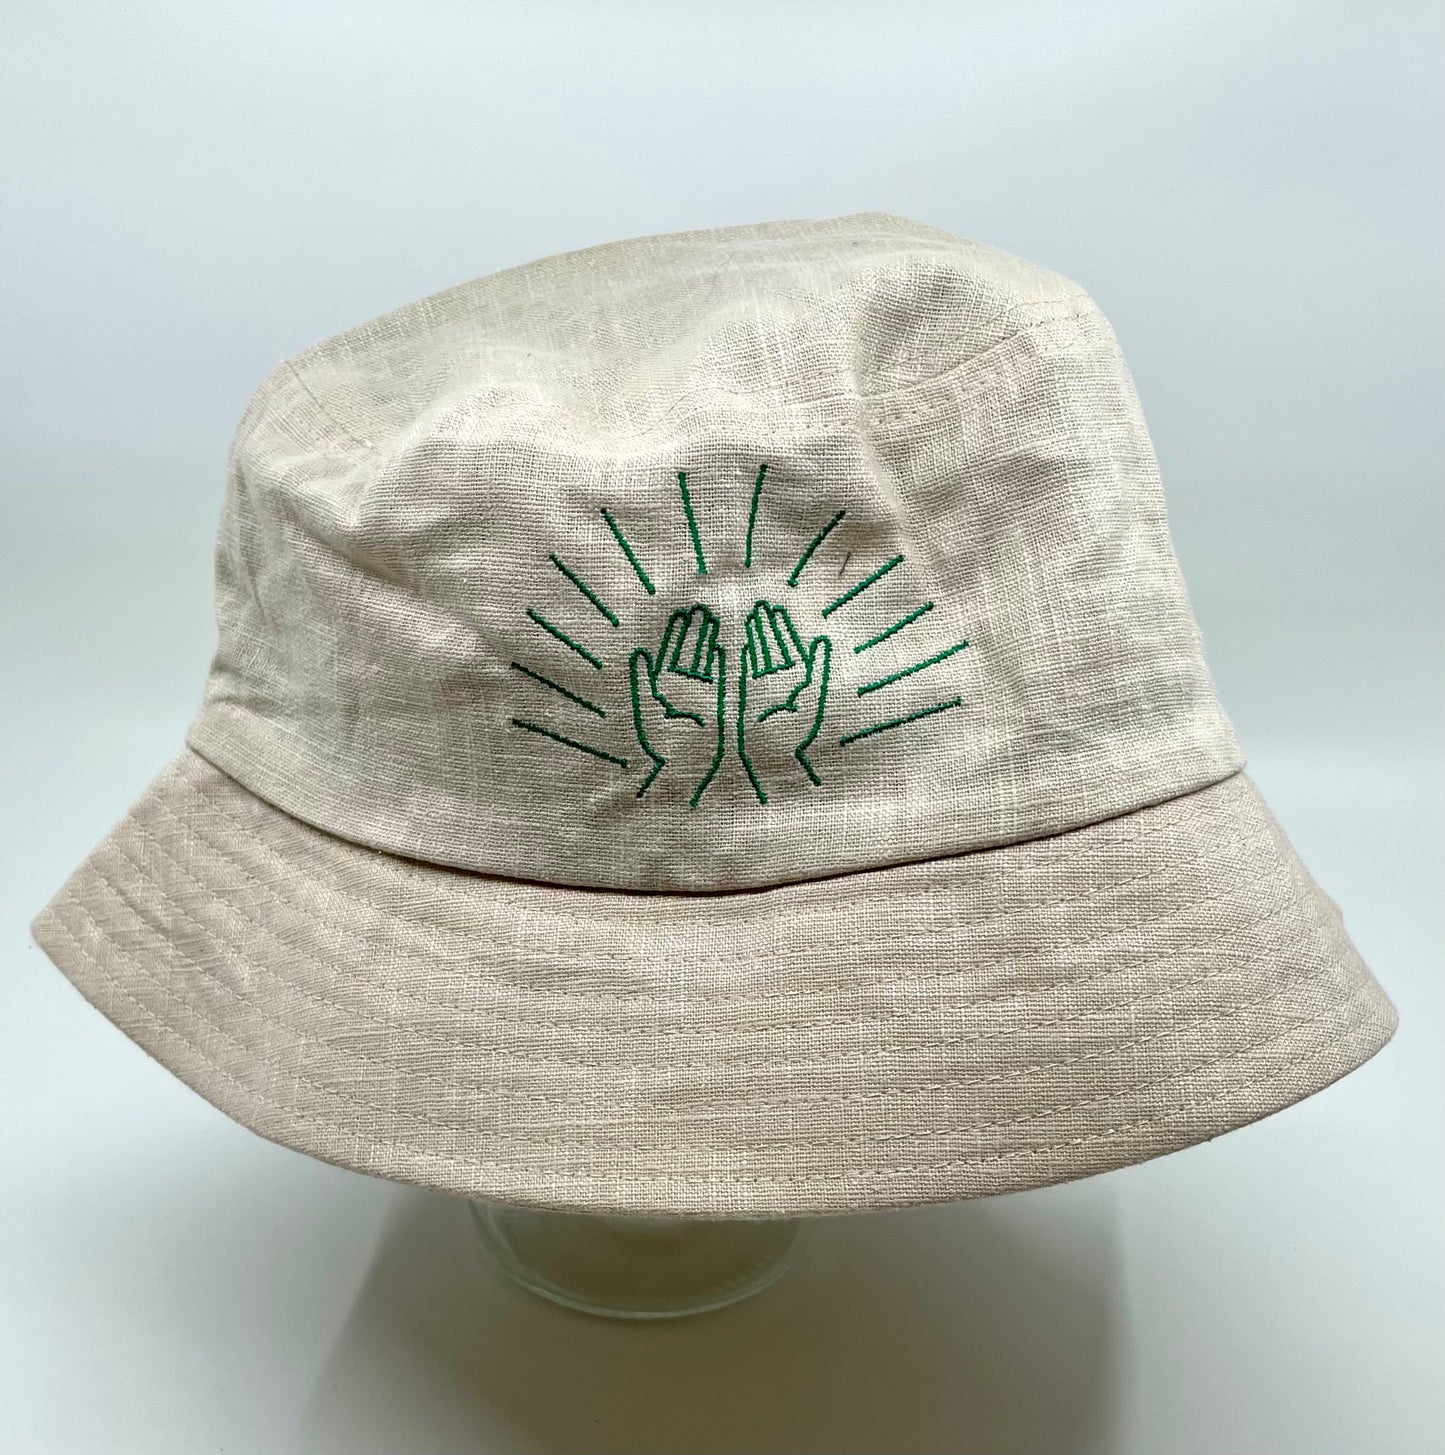 Sunday School Bucket Hat in Cream & Tennis Green